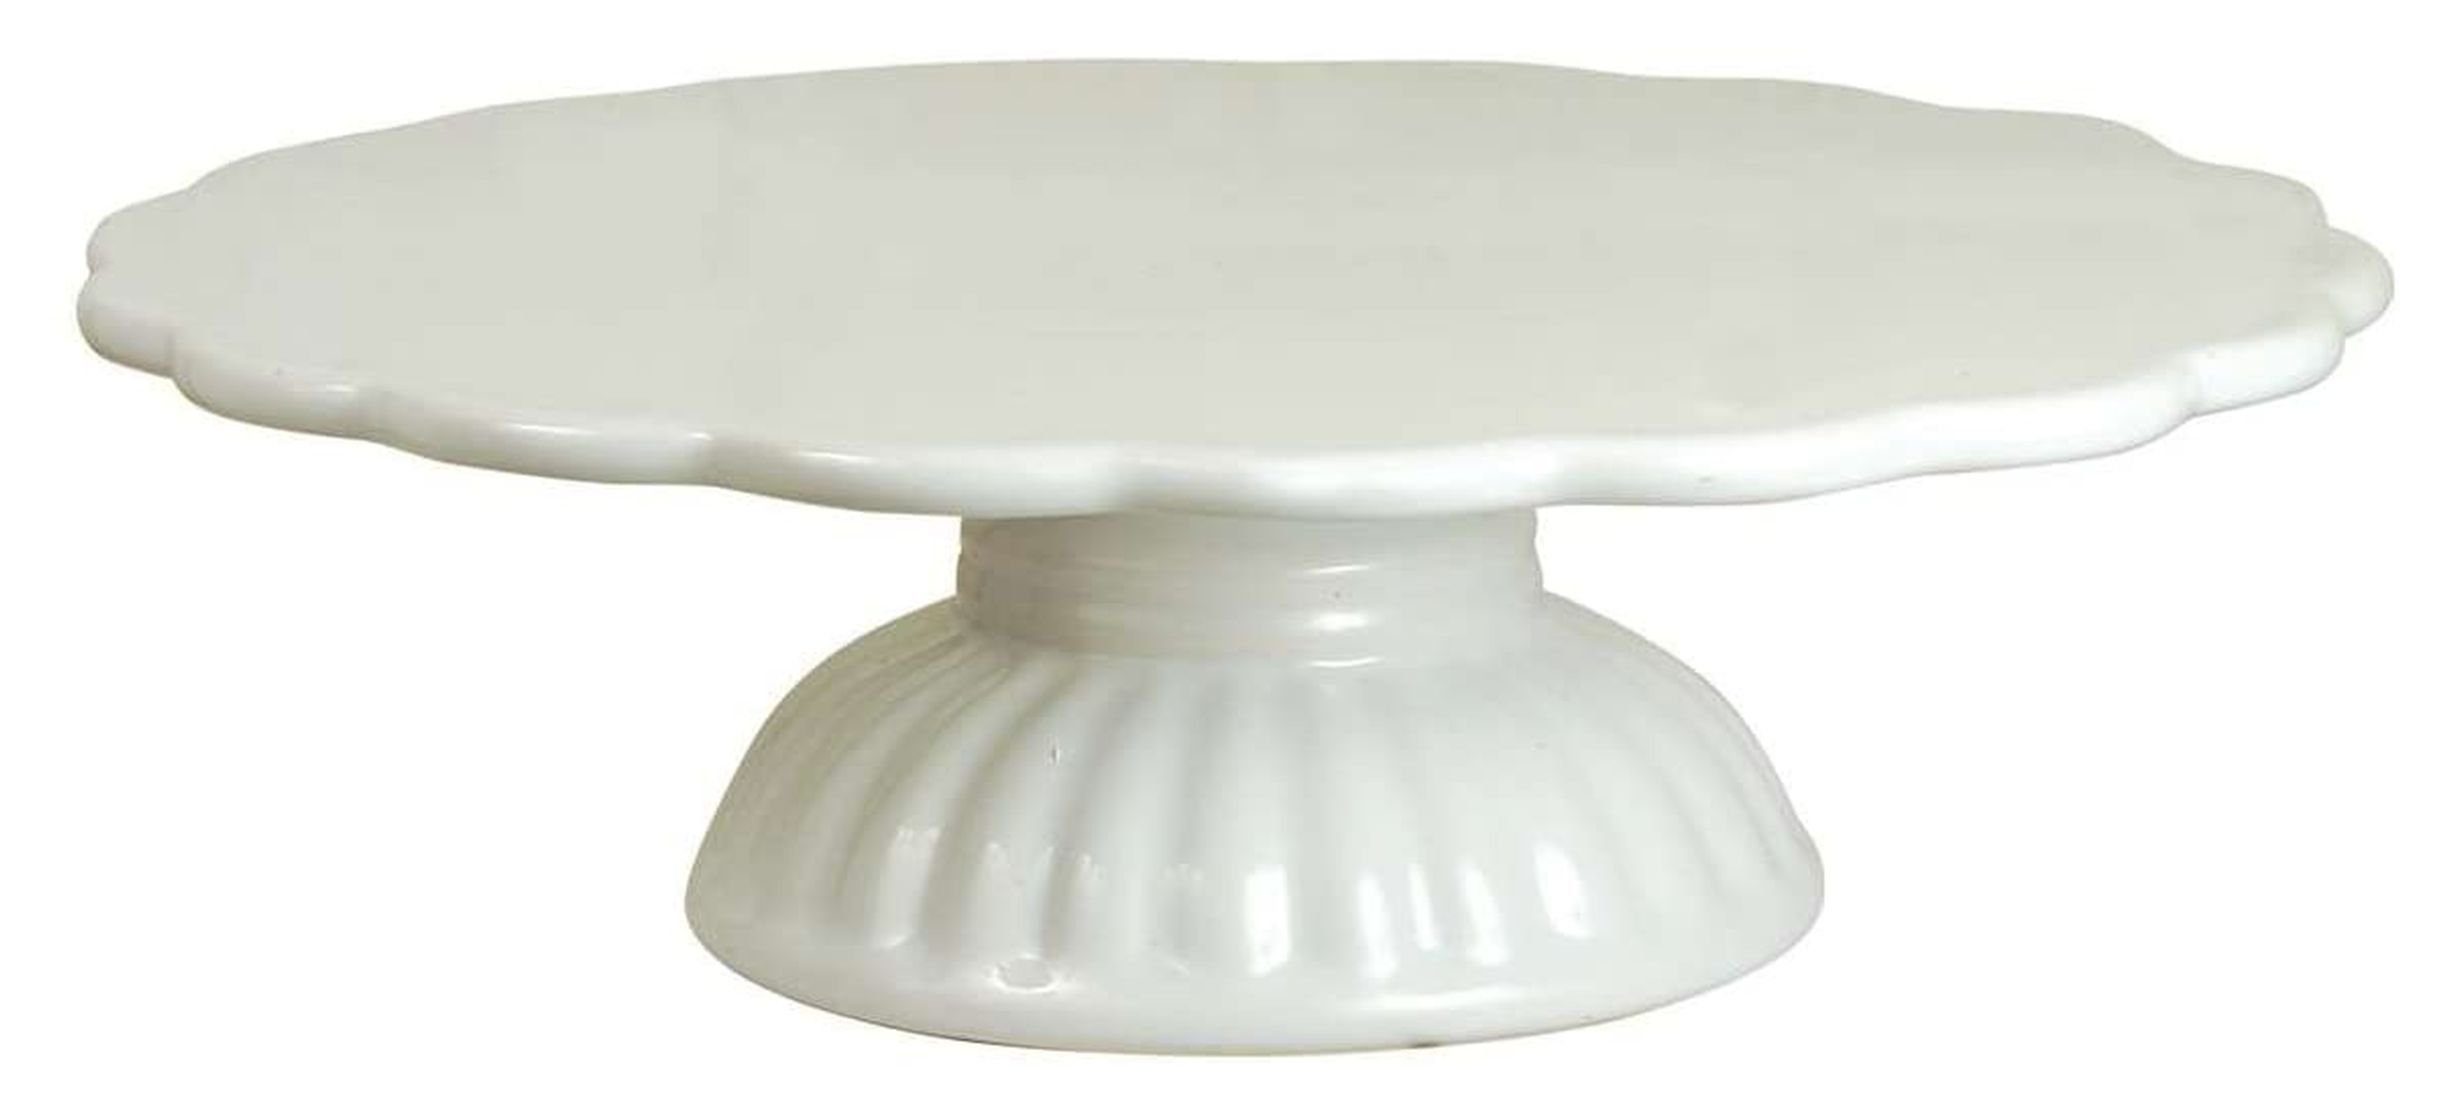 Laursen Ib Weiß Tortenplatte Fuß Keramik Keramik Tortenplatte auf pure Ib Laursen 2079-11, - white Mynte